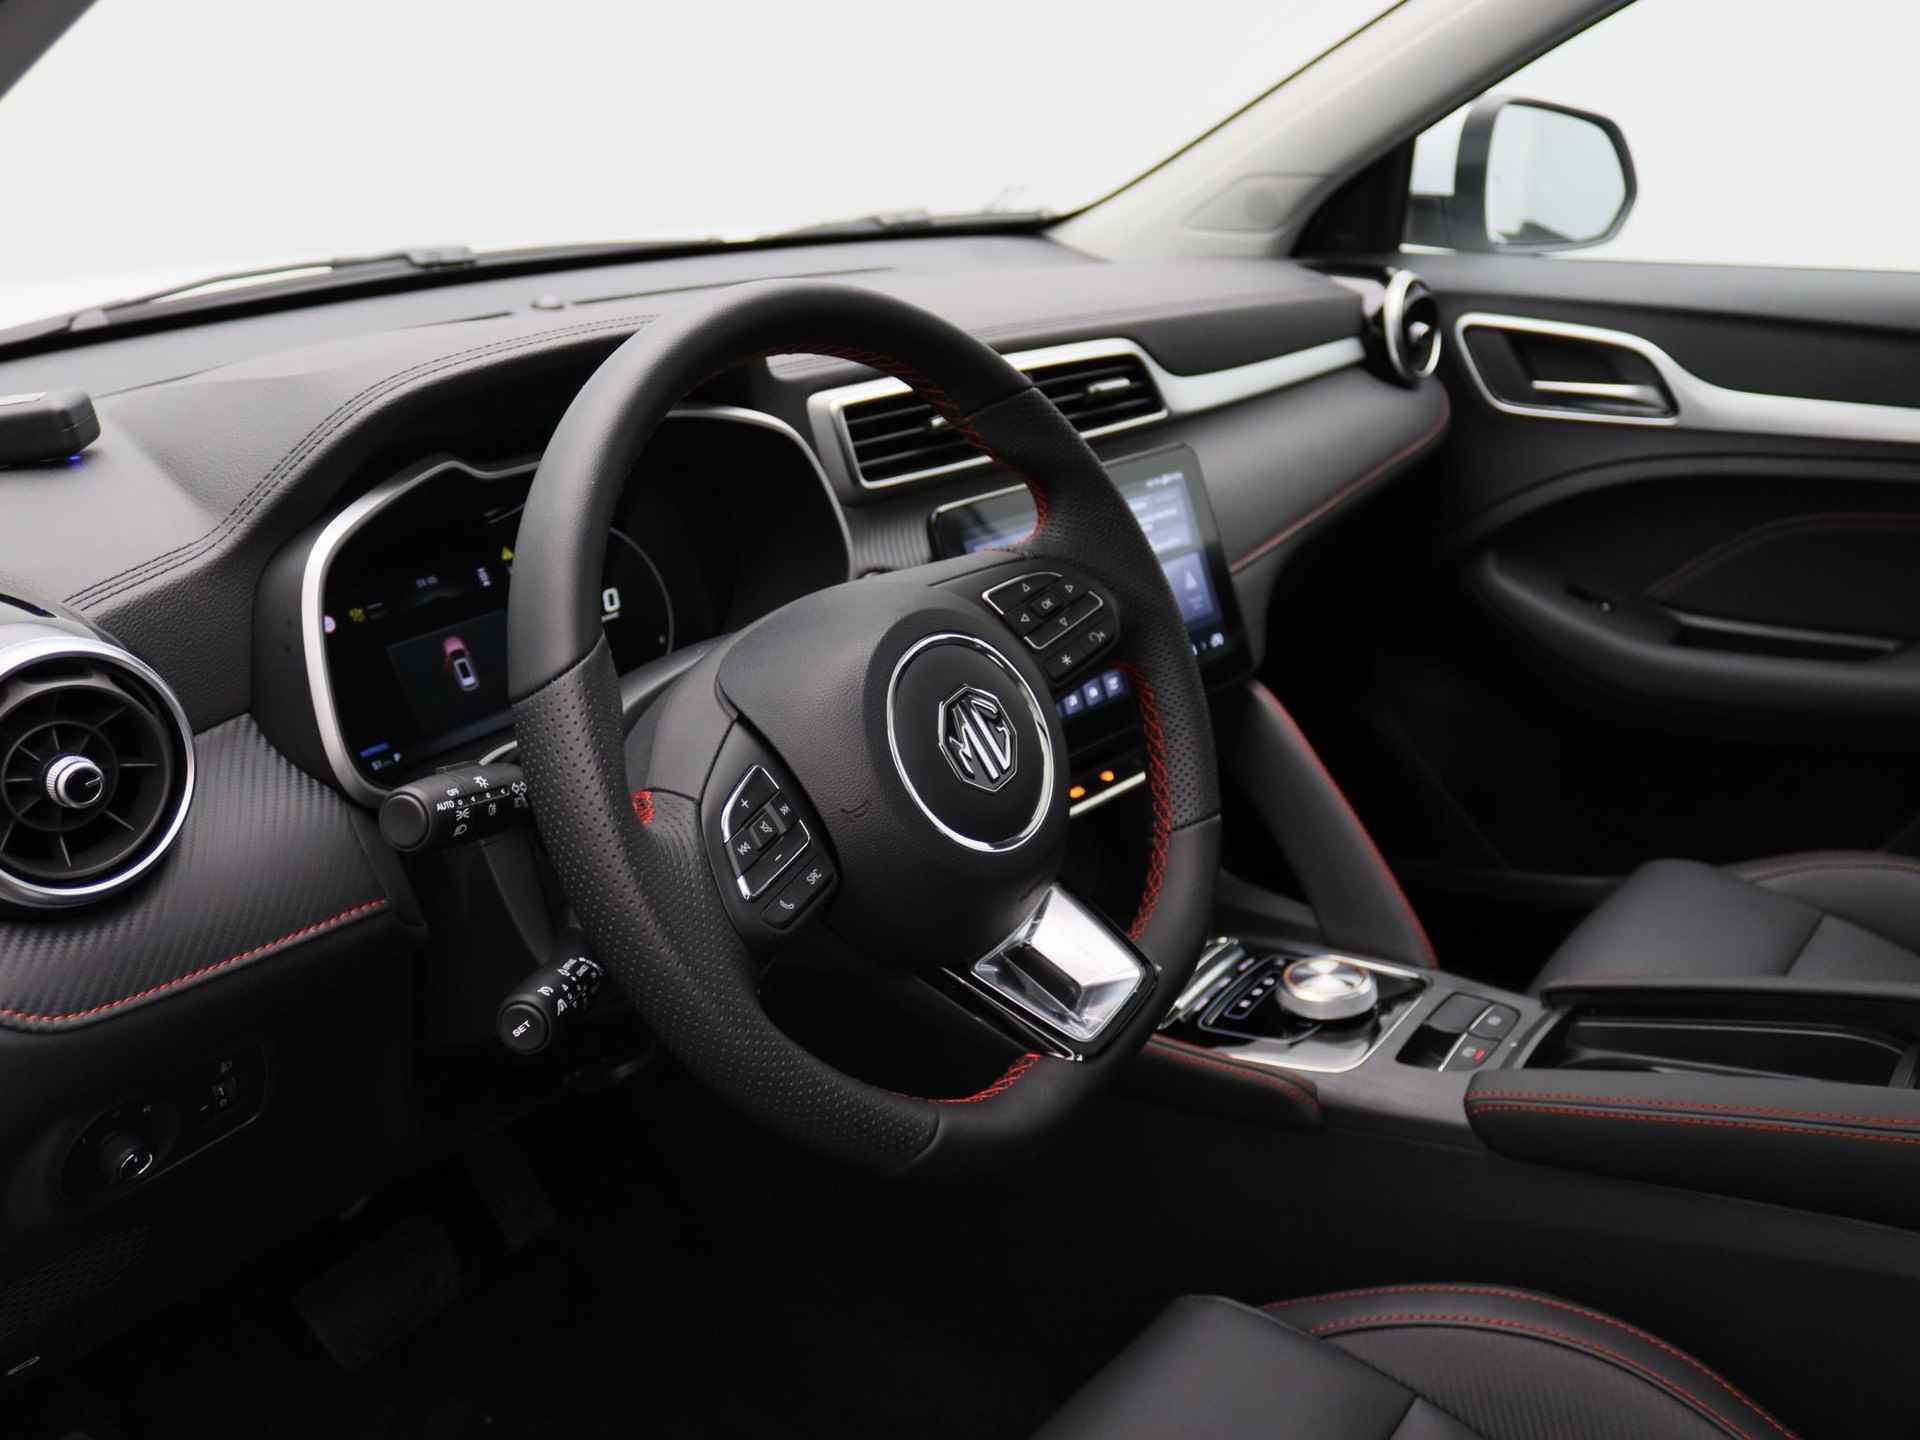 MG ZS EV Standard Range Luxury | 320 km WLTP | Navigatie | Panorama dak | 7 jaar 150.000 km garantie | Nu €2500,- Upgrade Actie Voordeel! | Wordt in alle kleuren verwacht! - 5/19